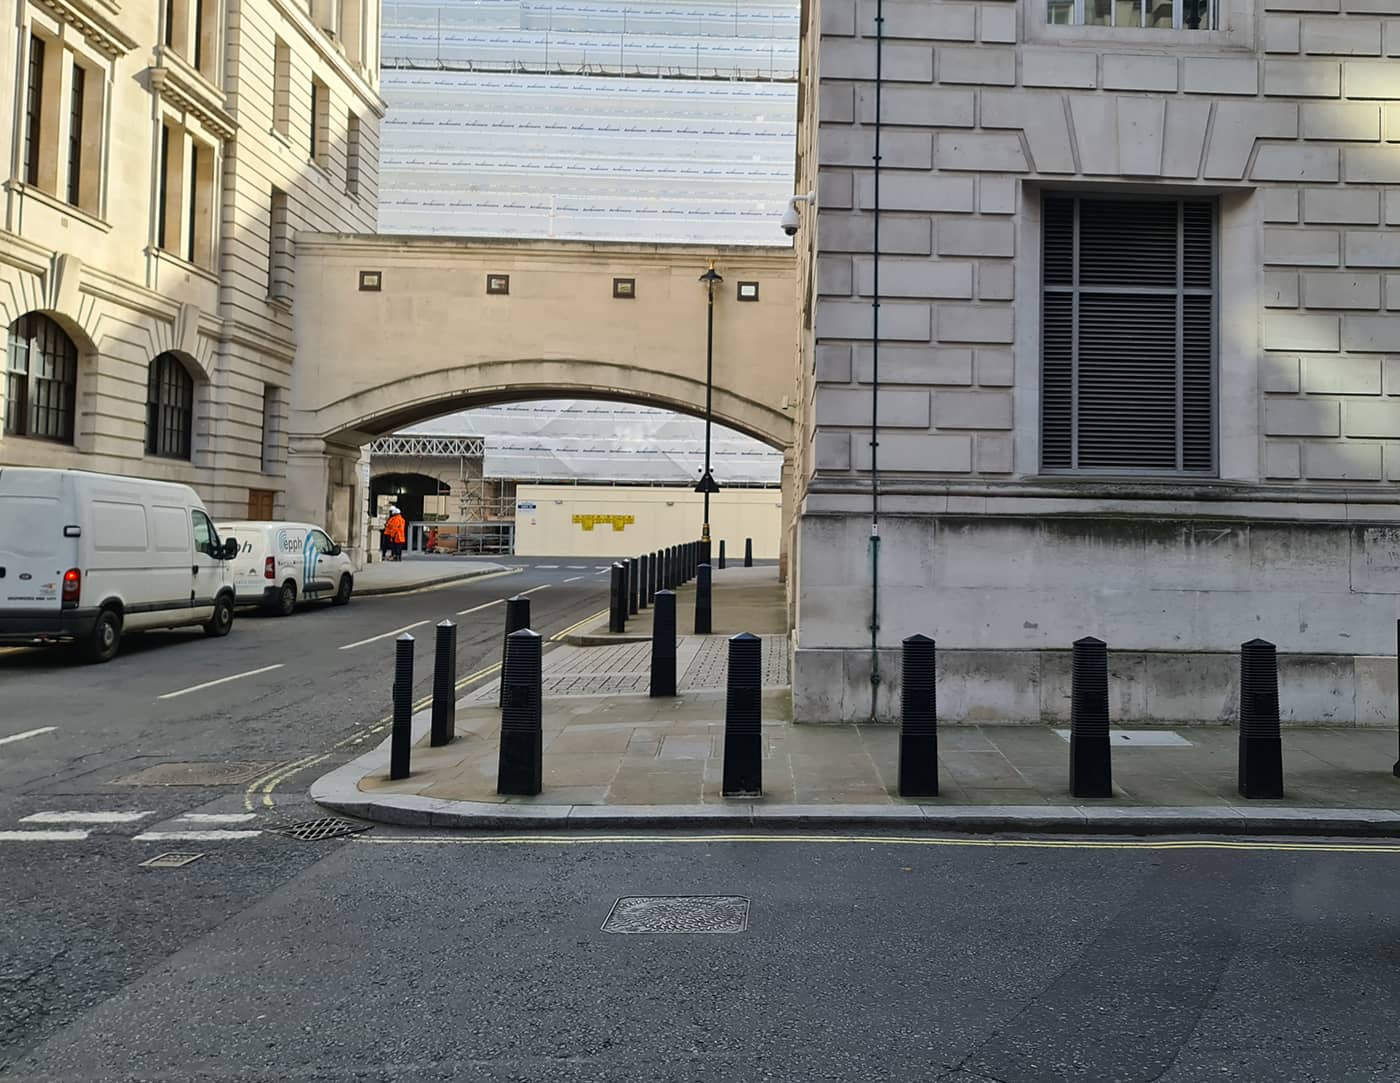 In foto si vede un incrocio londinese, dove sono state girate alcune scene dei film di Harry Potter